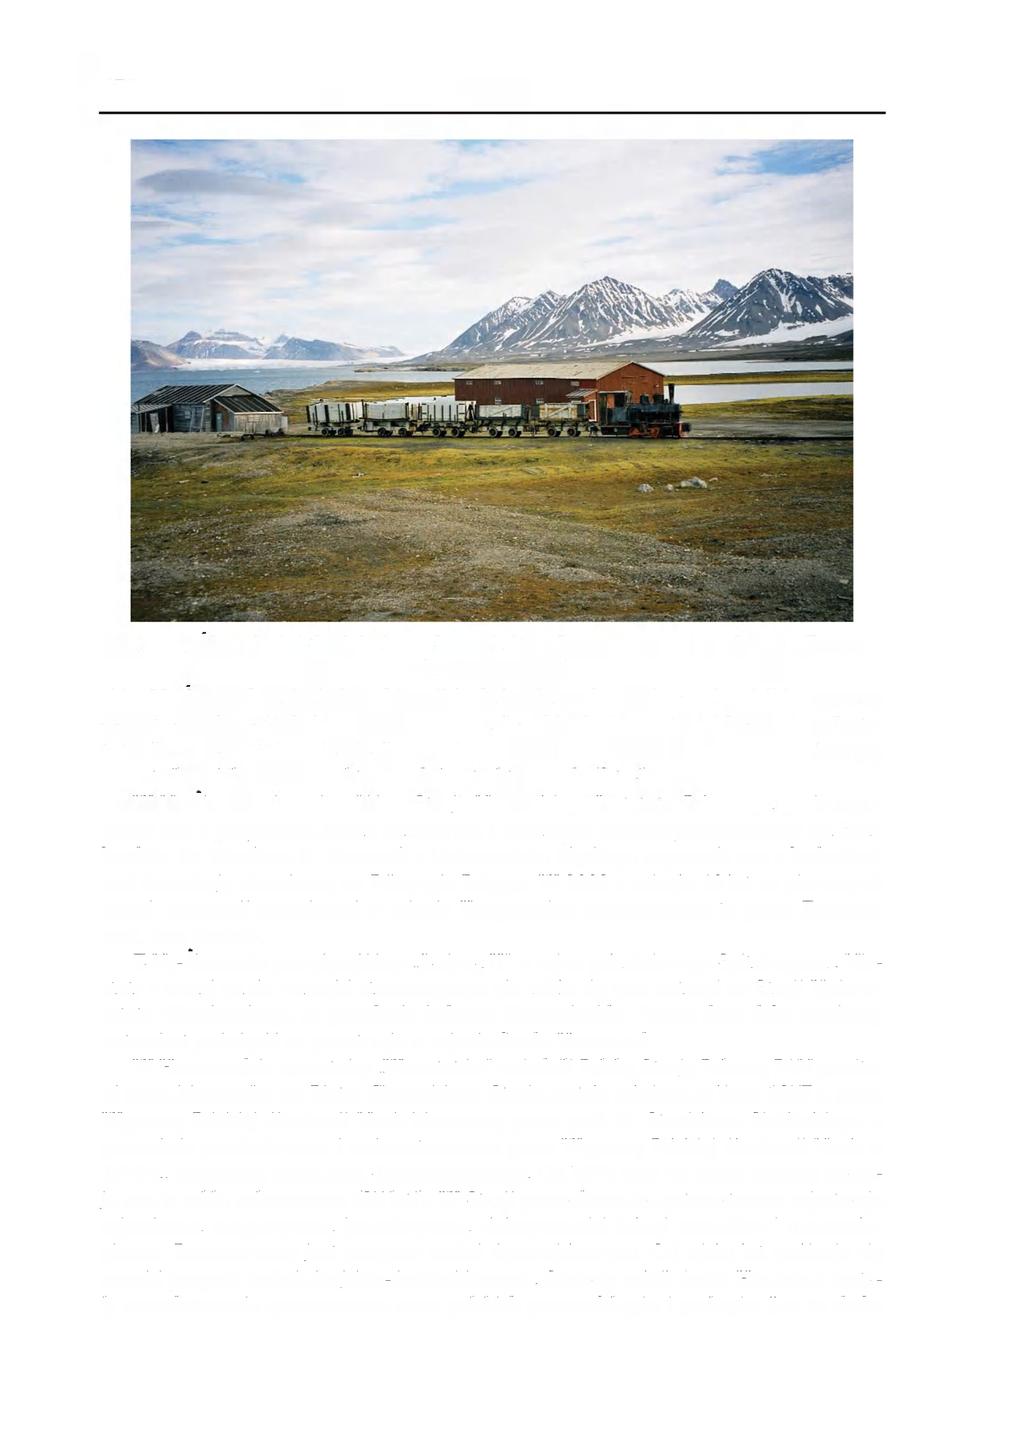 378 Kronika Fot. 3. Ny-Alesund - kolejka (zabytkowy eksponat), którą dowożono węgiel z kopalni na nadbrzeże. Fot. Jan Szupryczyński skie, Ny-Alesund zapisał się w historii badań polarnych.